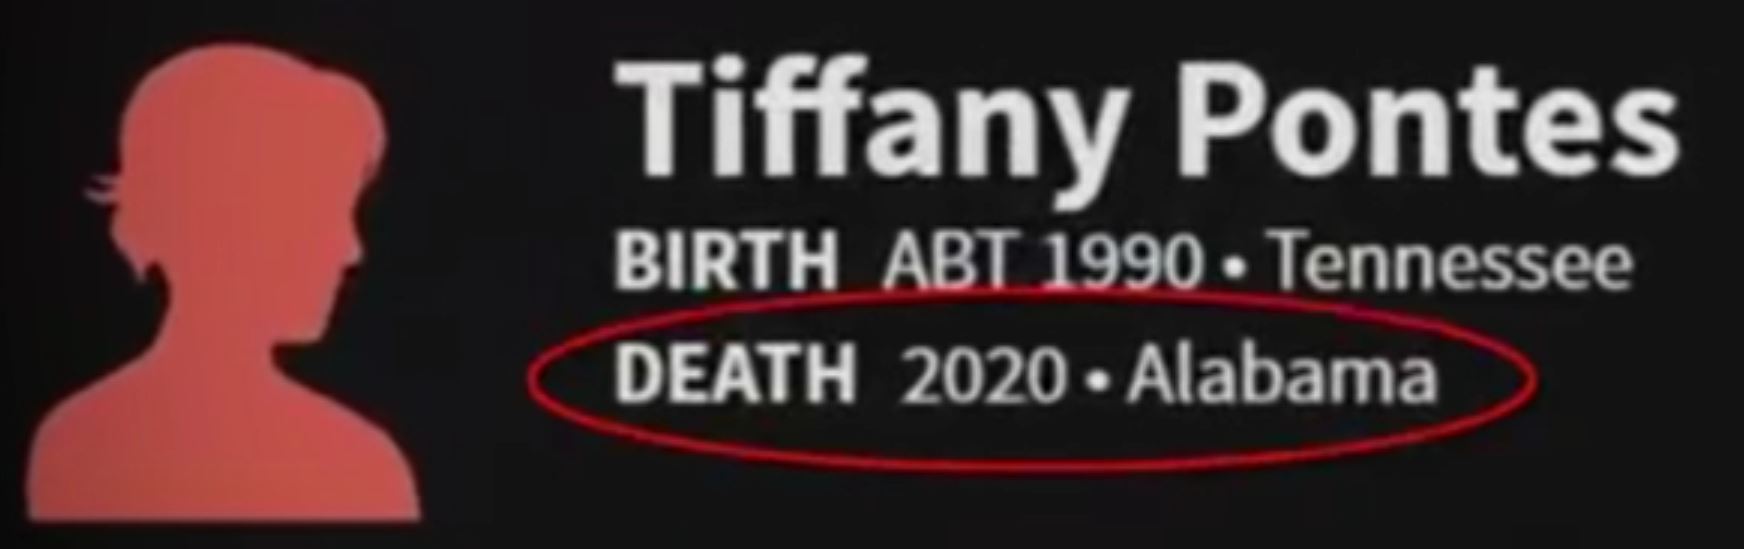 tiffany-pontes-death-2020-alabama.JPG